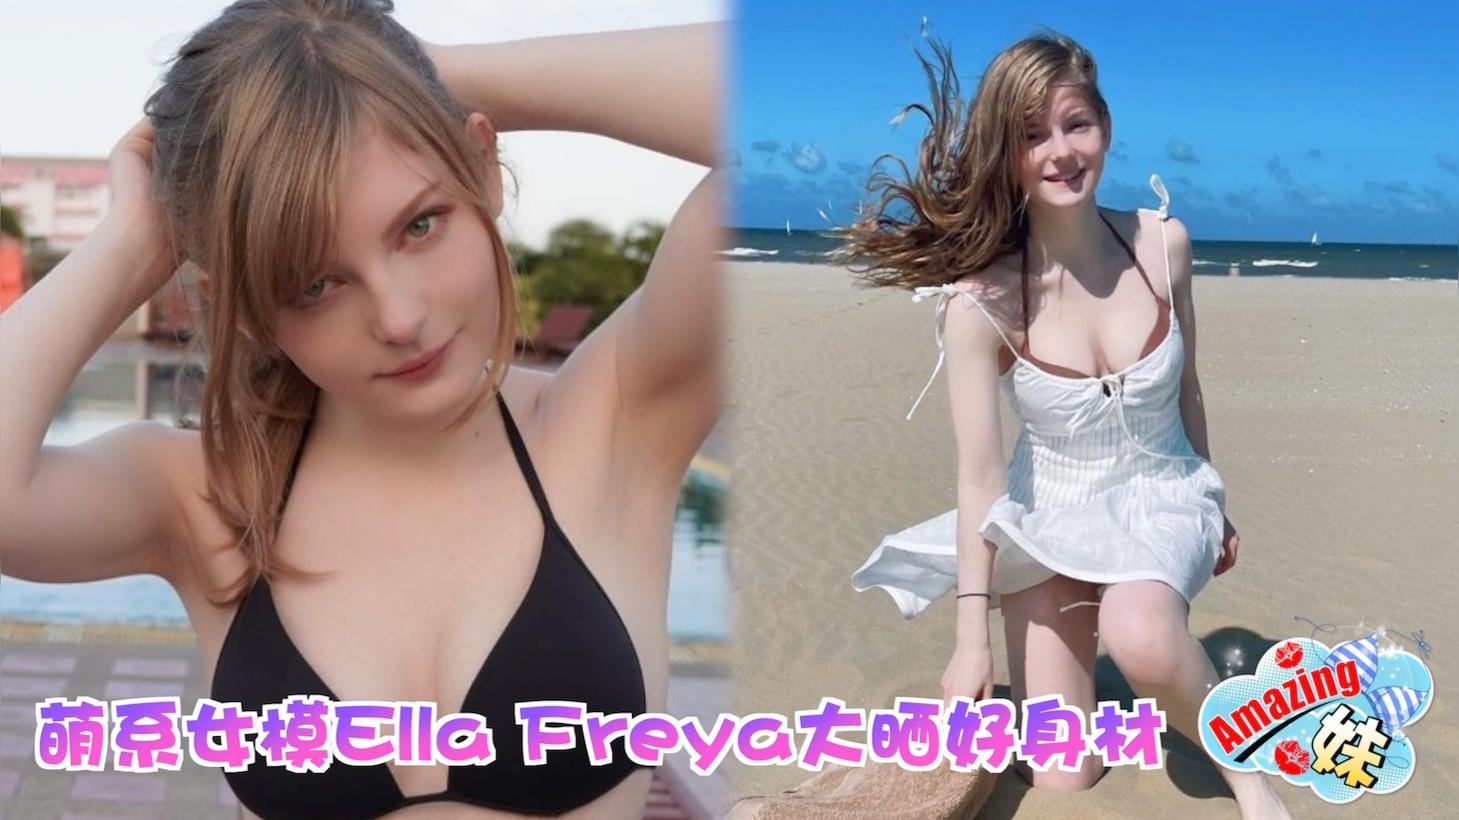 Moni  RE Database on X: Aparentemente a galera já achou a modelo dela. O  nome é Ella Freya.  / X